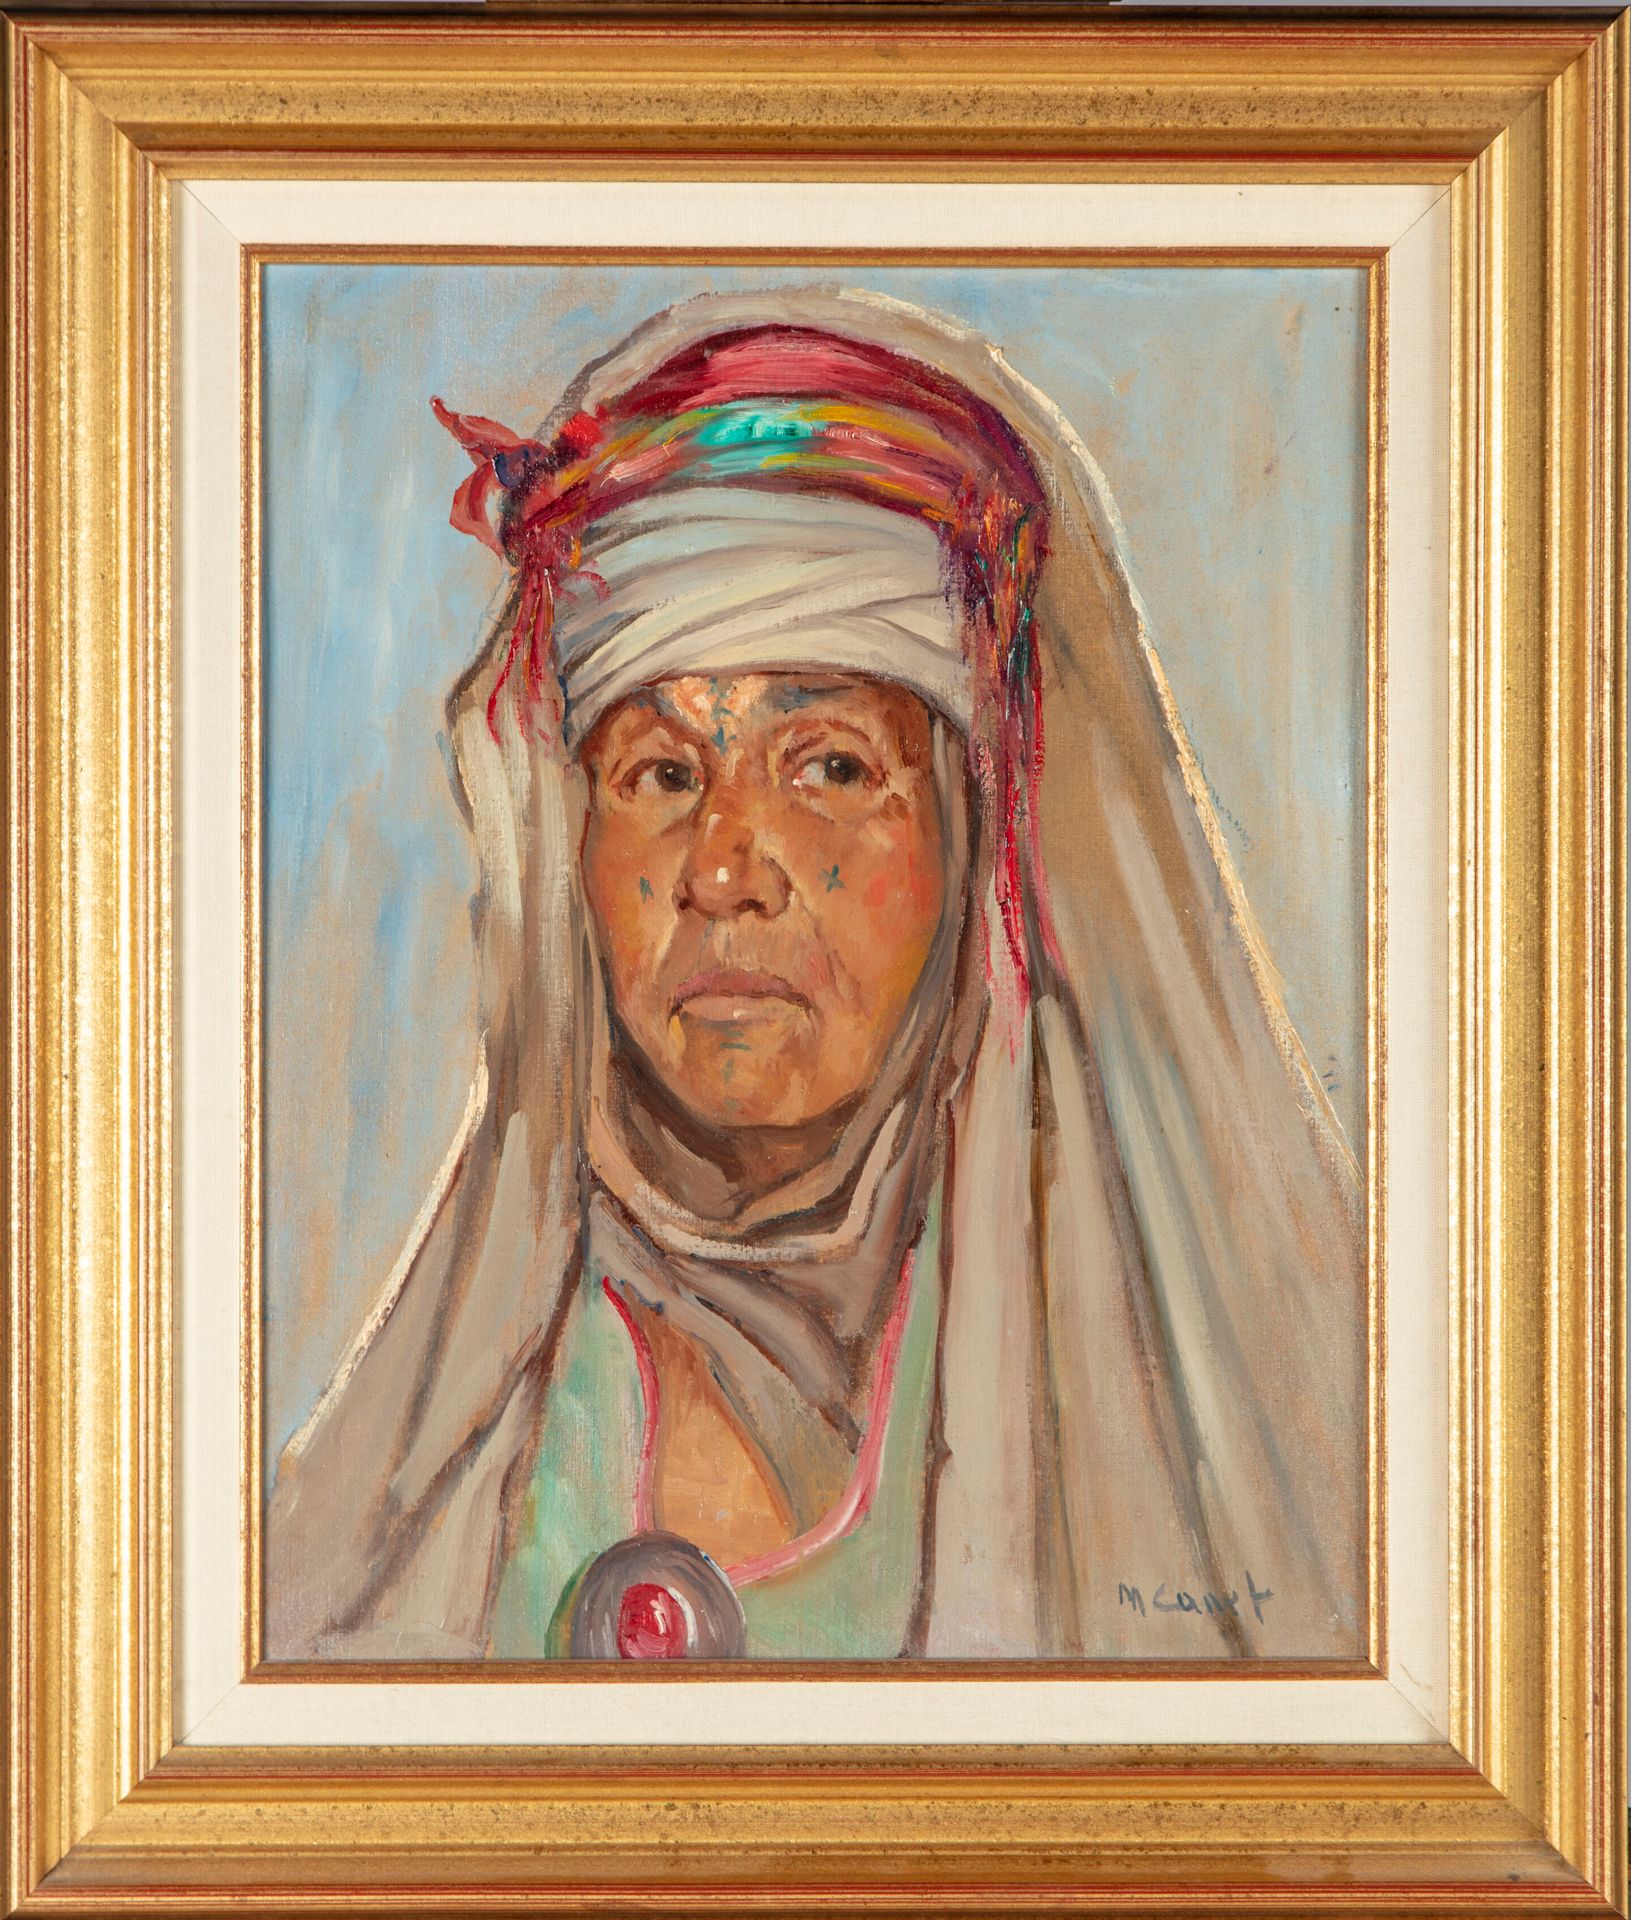 MARCEL CANET Marcel CANET (1875-1959)

Portrait d'une femme Berbère

Huile sur t&hellip;